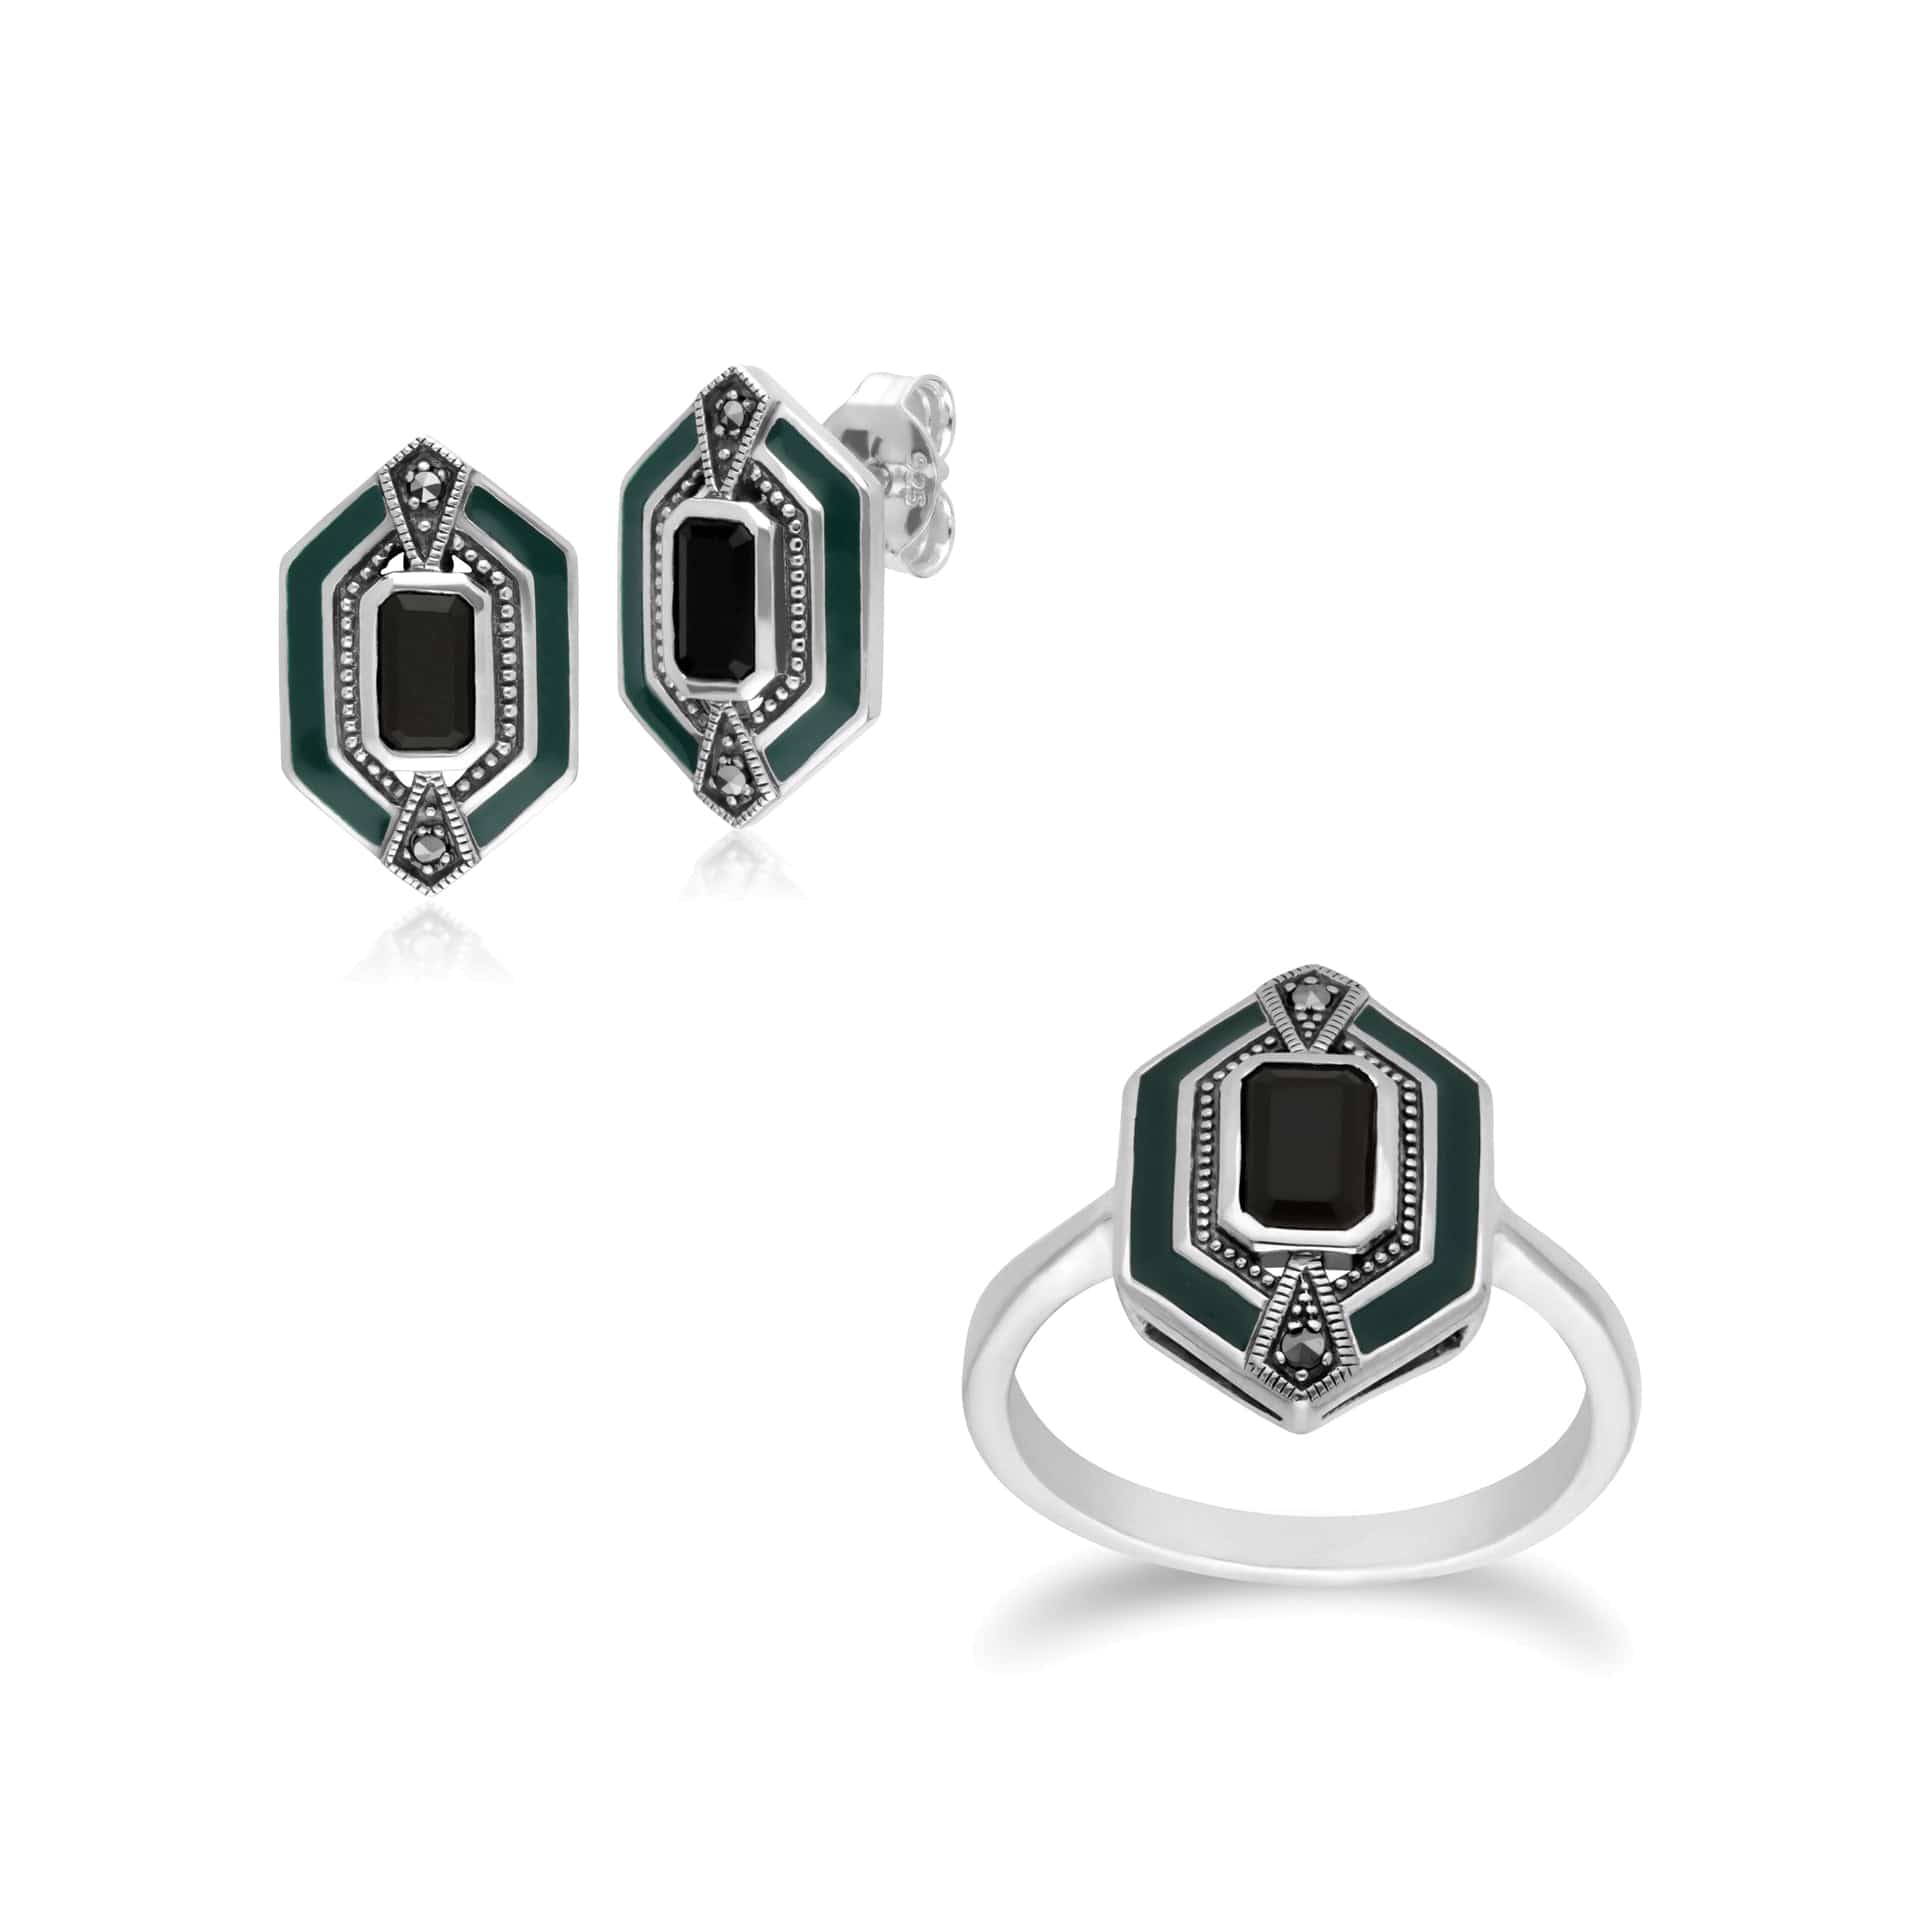 214E868104925-214R602604925 Art Deco Style Black Onyx, Marcasite & Green Enamel Hexagon Stud Earrings & Ring Set in 925 Sterling Silver 1